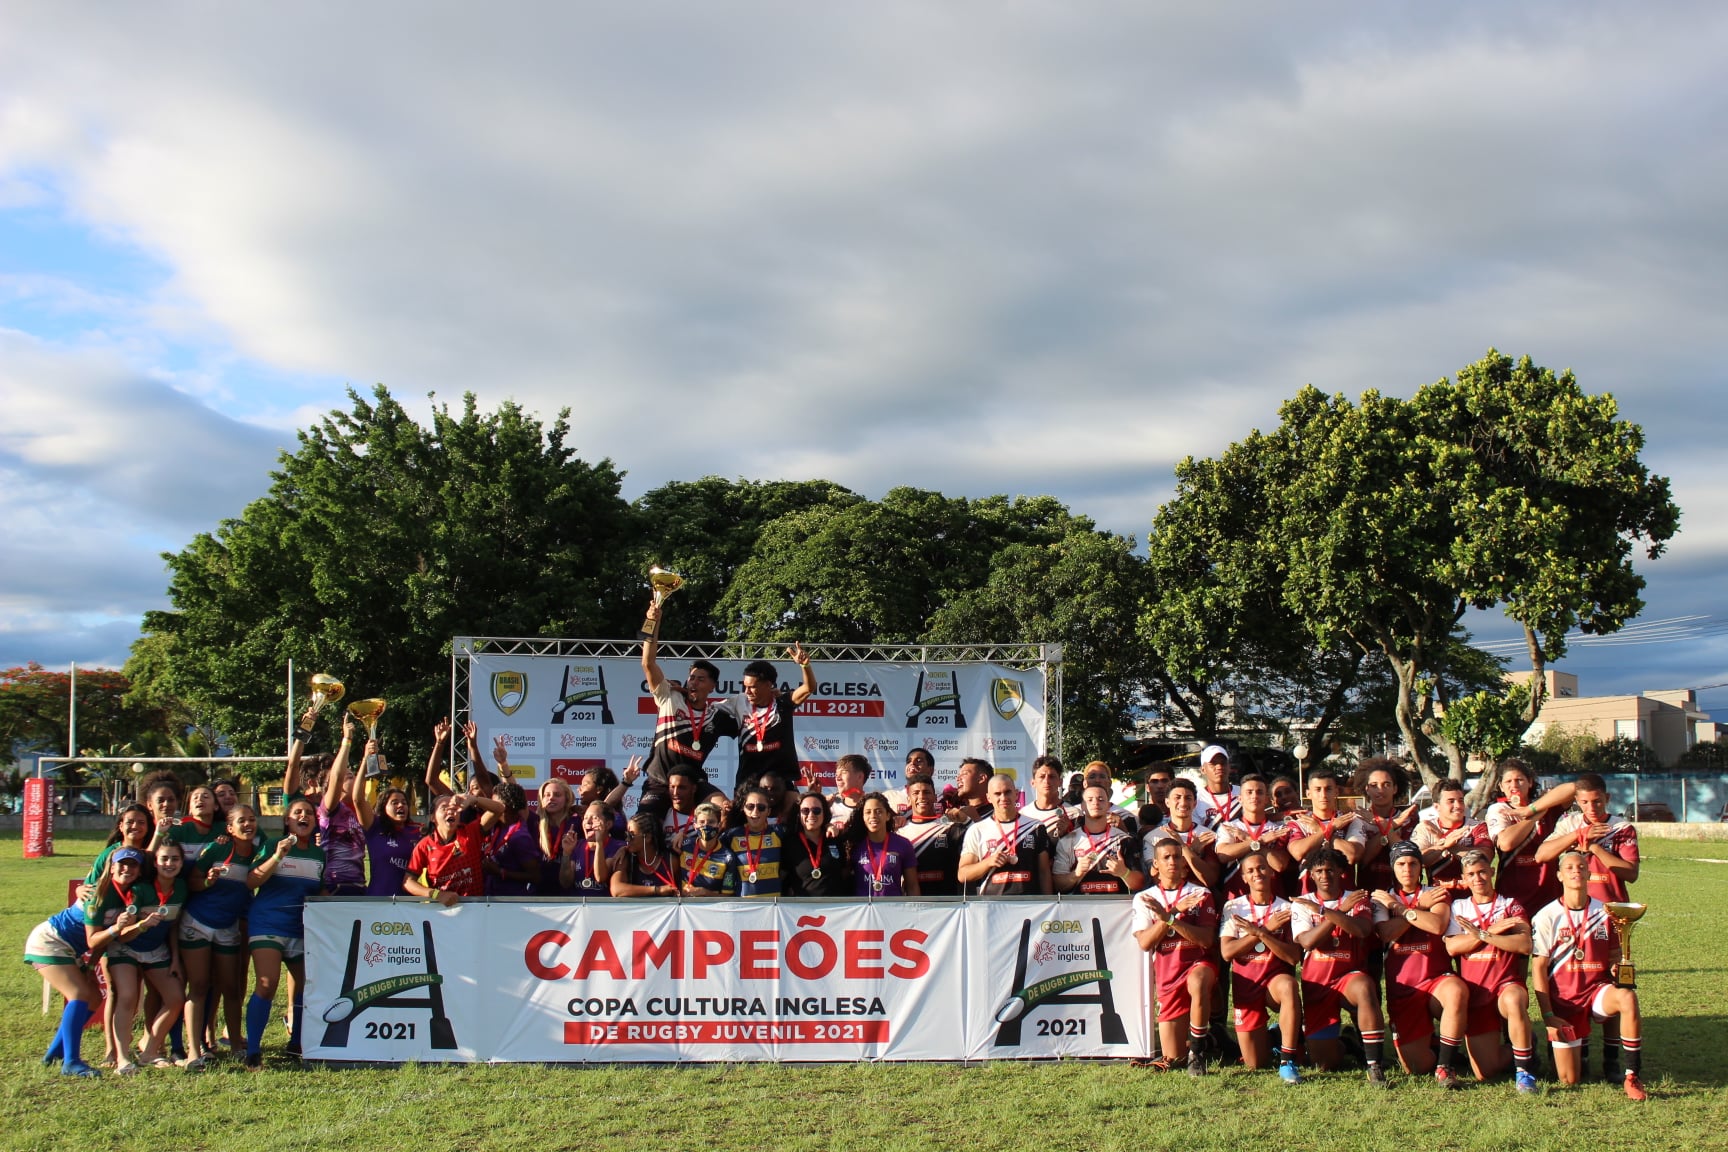 Copa Cultura Inglesa reúne o futuro do rugby brasileiro em Taubaté nesse fim de semana